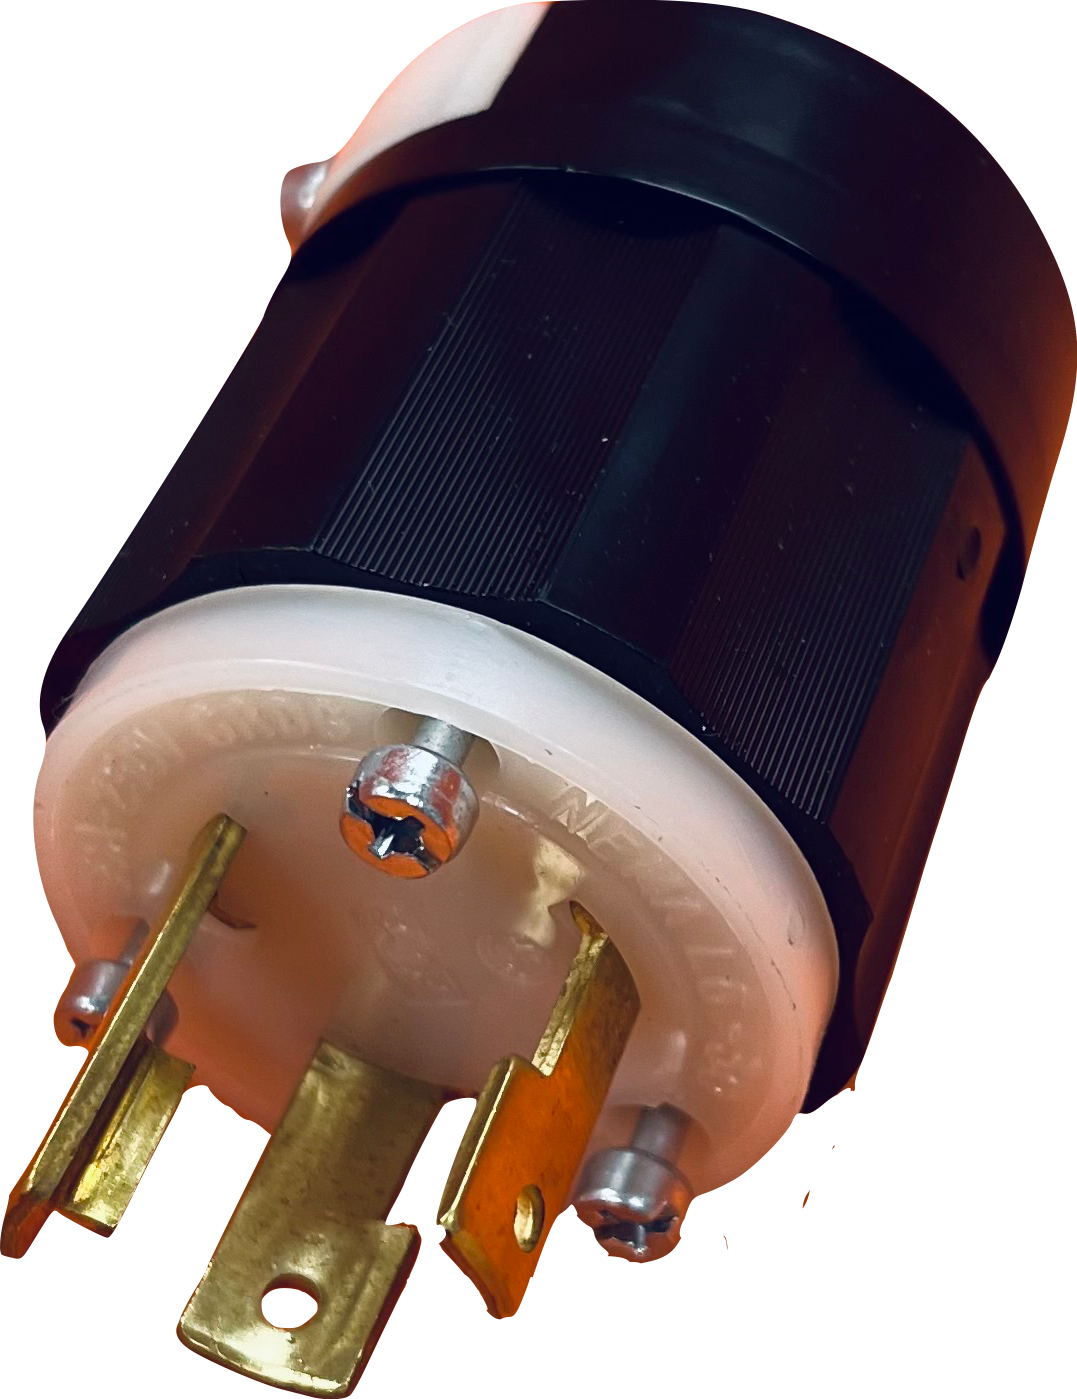 Leviton 2621 Industrial Grade Locking Plug Nema L6-30P, 30 Amp, 250 Volt